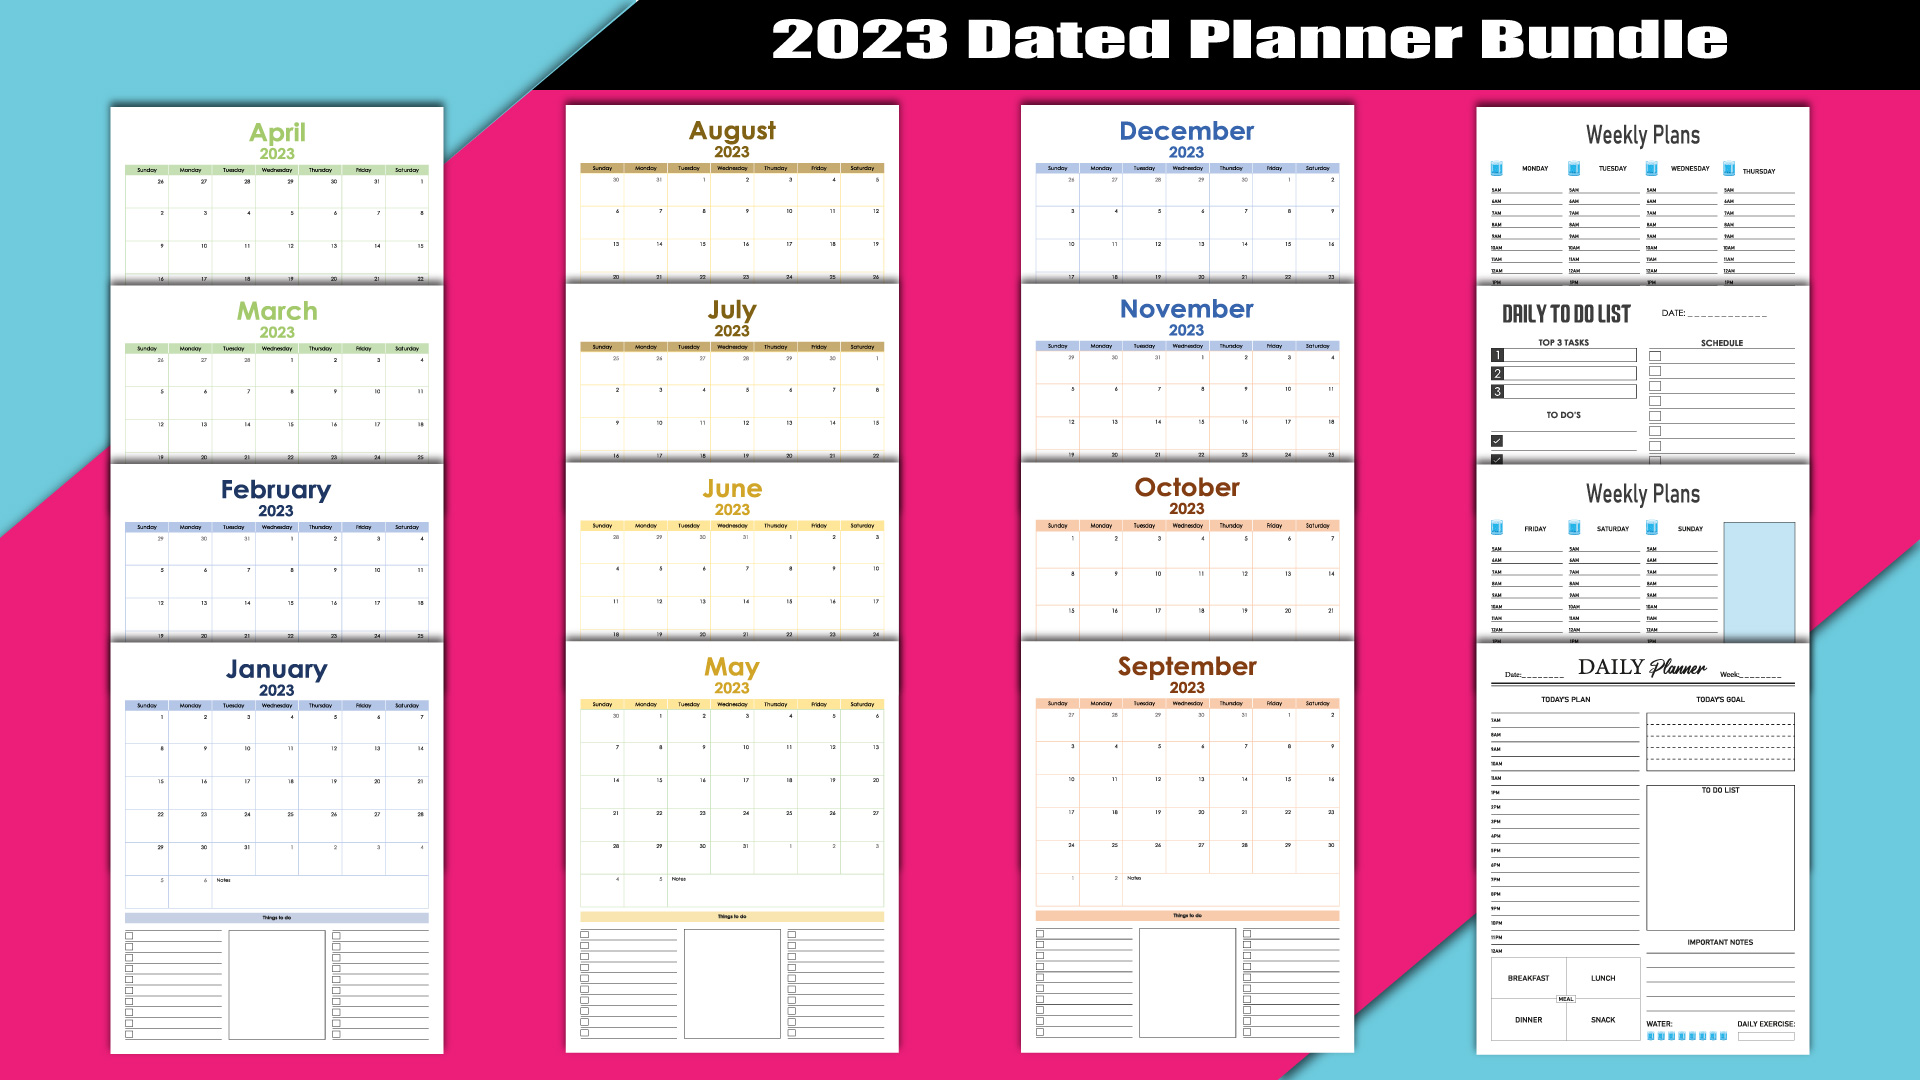 2023 Dated Planner Bundle facebook image.